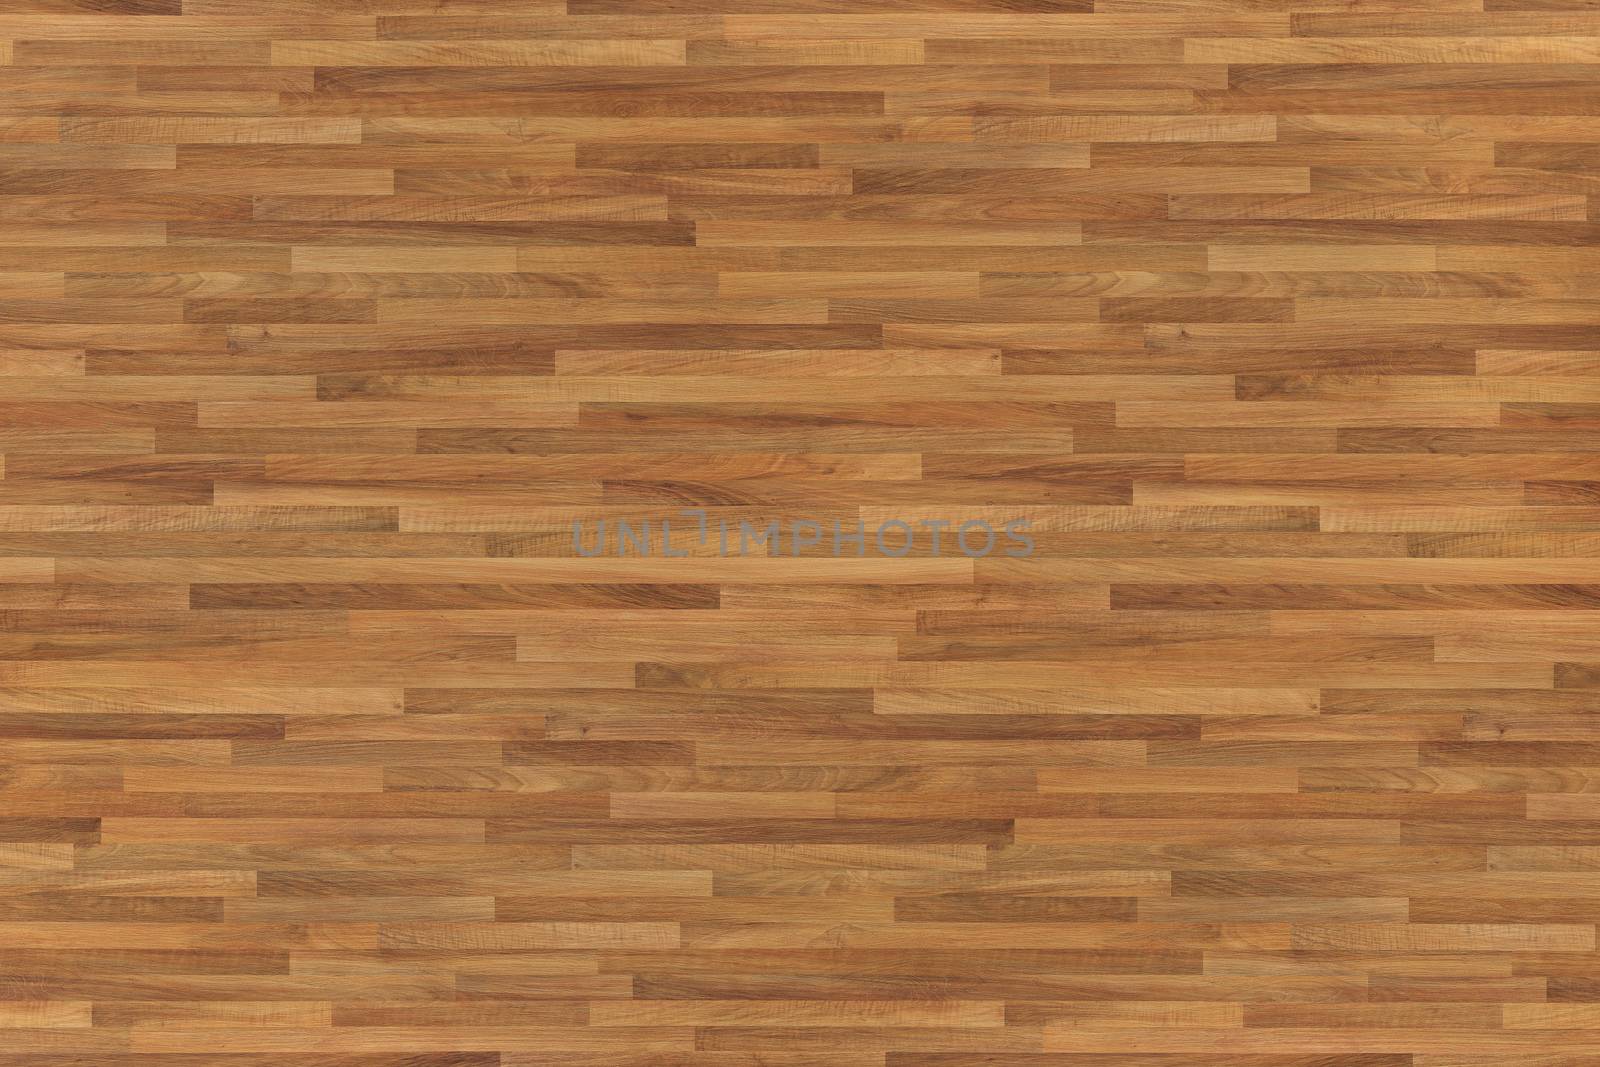 Grunge wood pattern texture background, wooden parquet background texture. by ivo_13